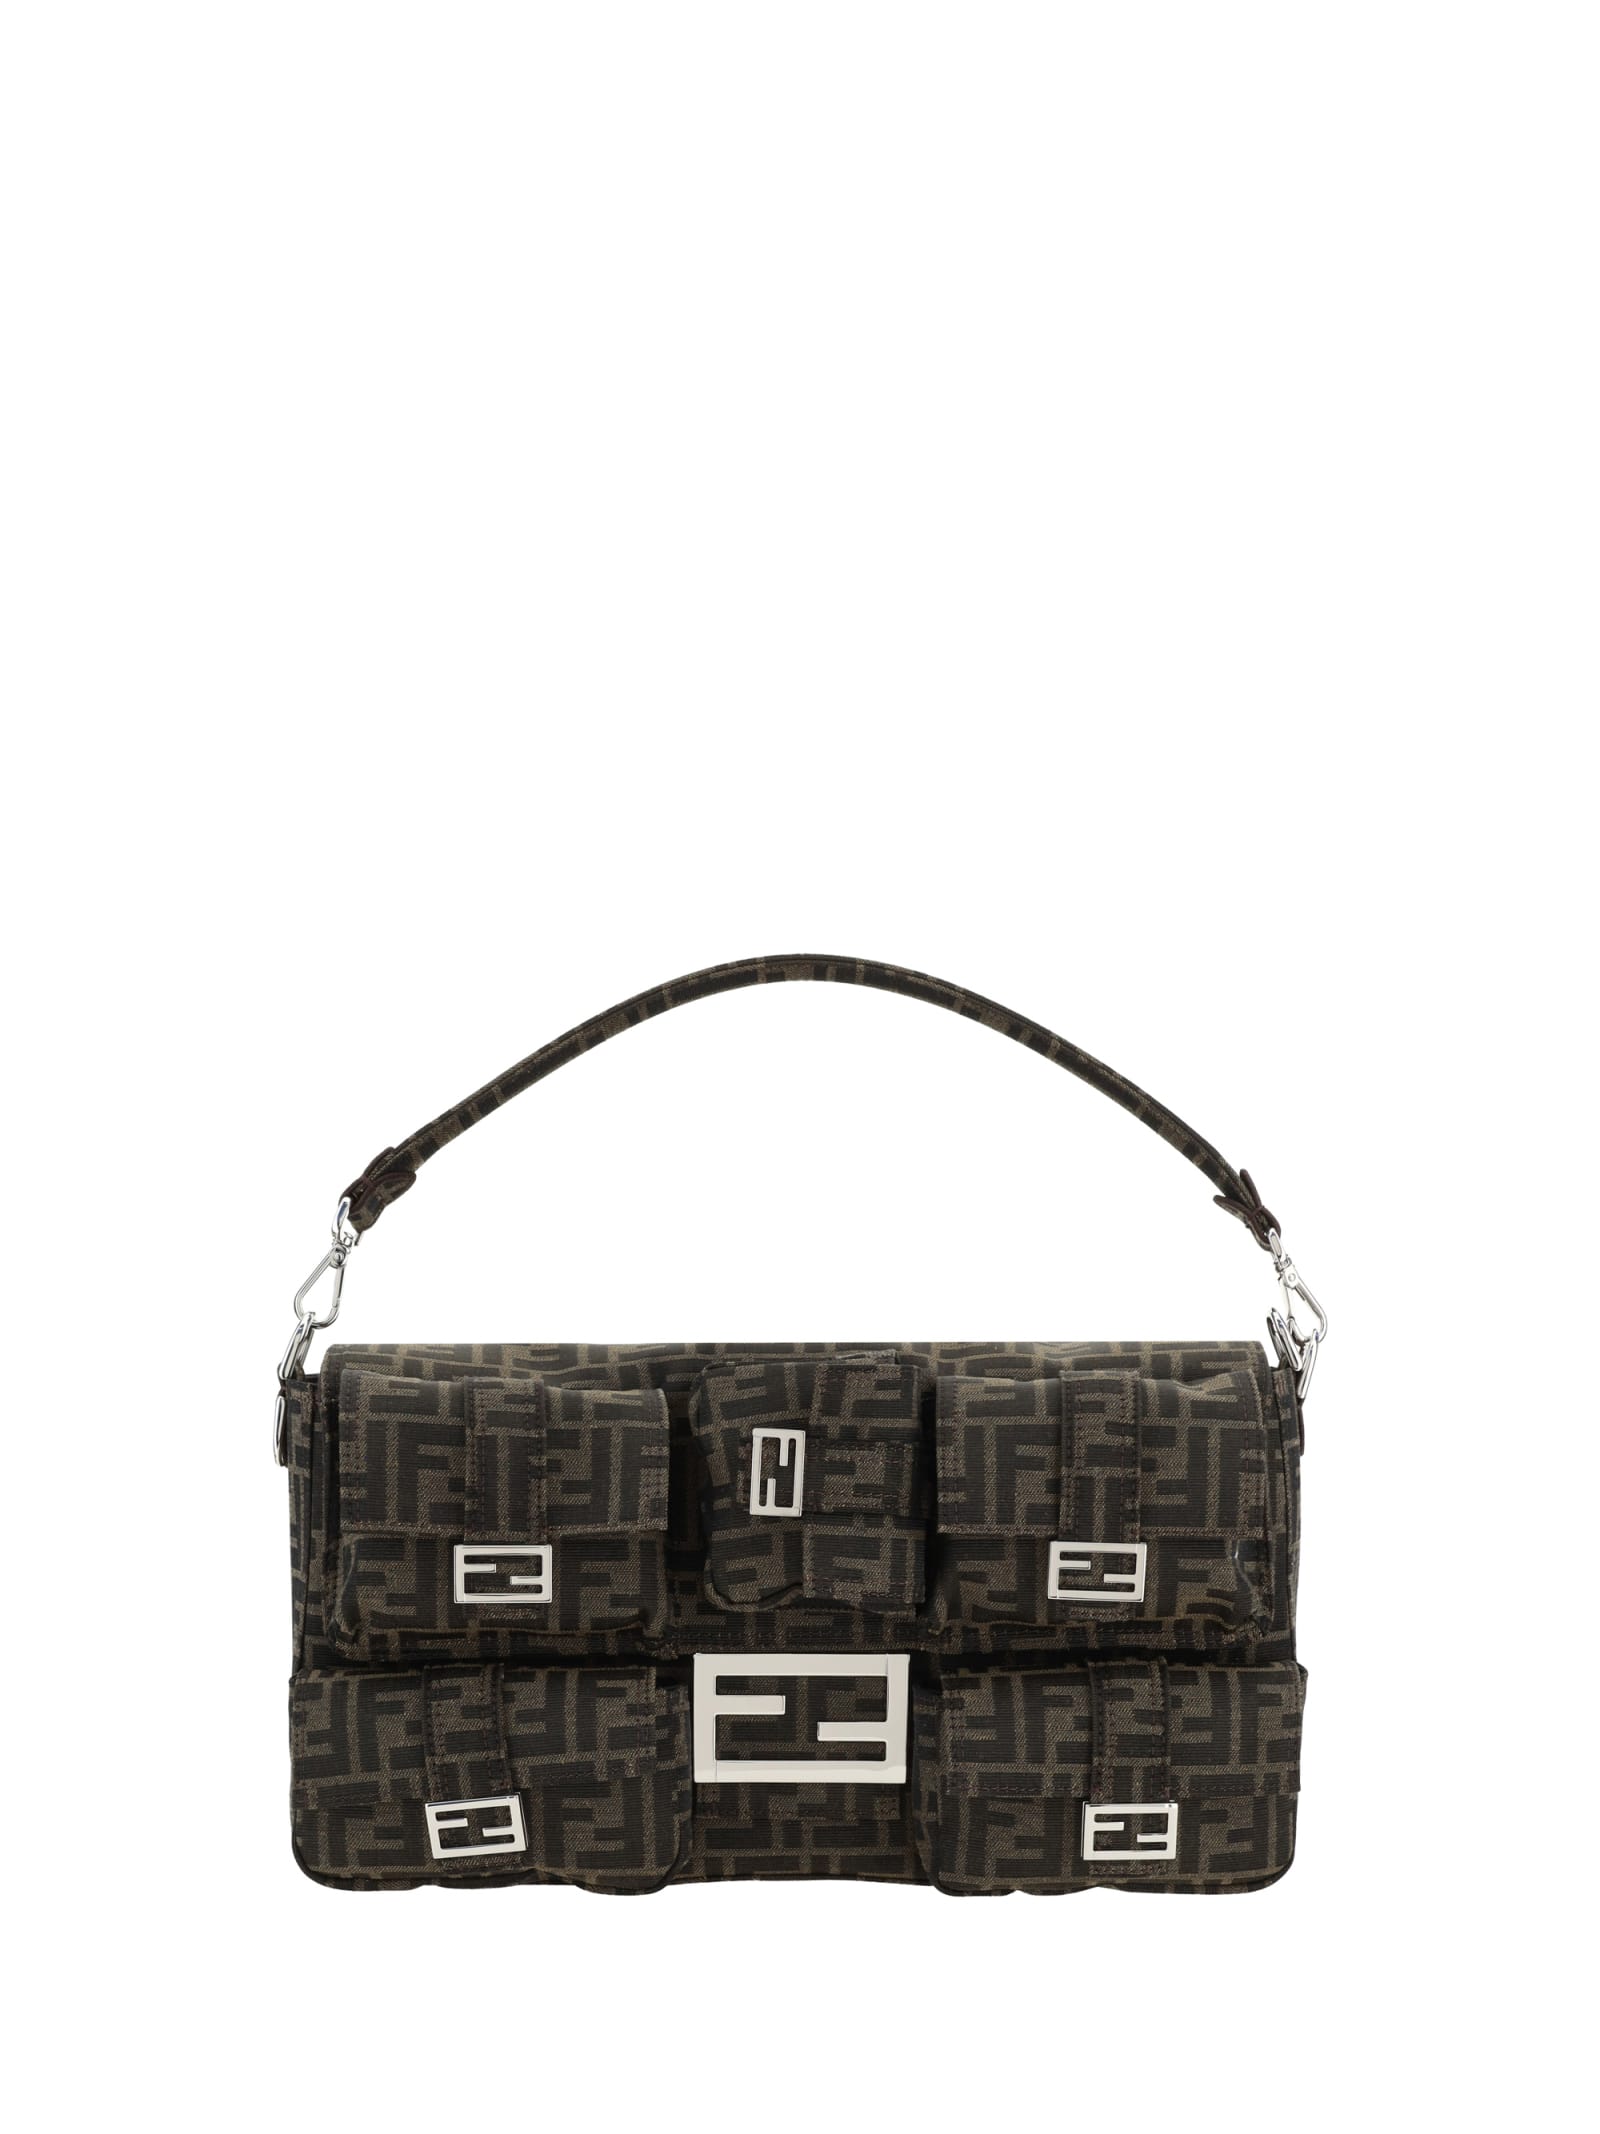 Fendi Baguette Handbag In Brown